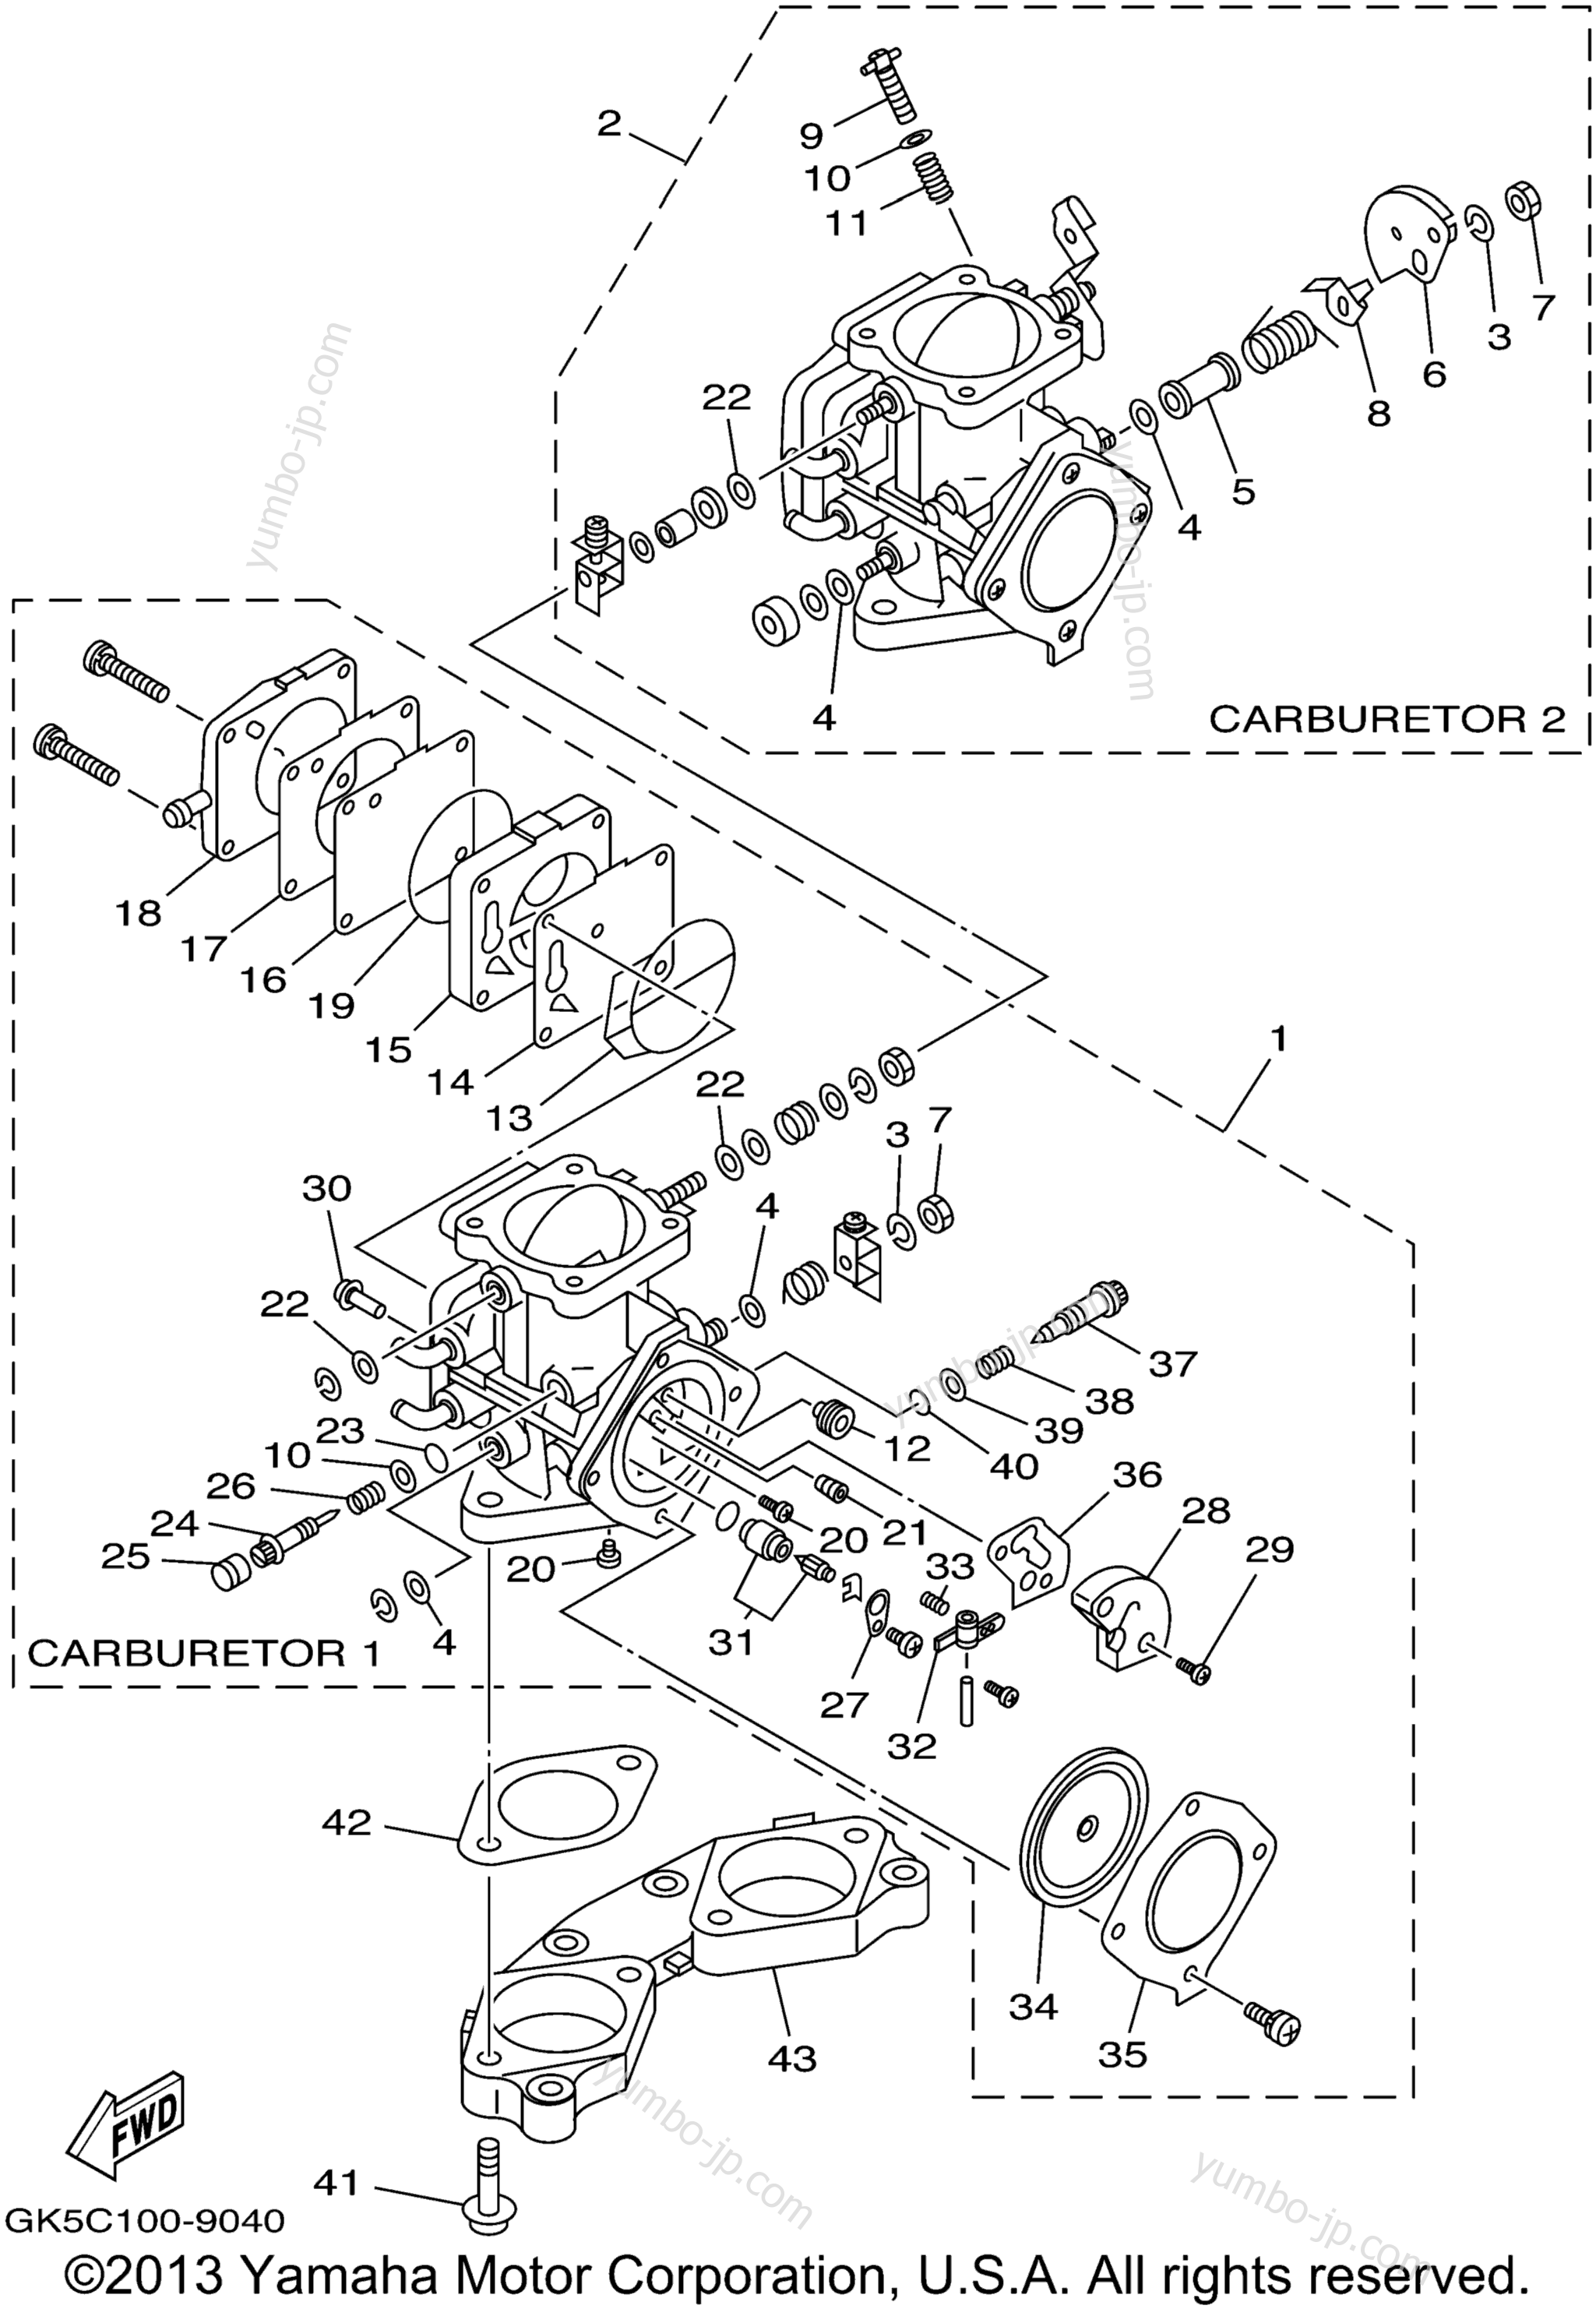 Карбюратор для гидроциклов YAMAHA WAVE RUNNER GP760 (GP760W) 1998 г.